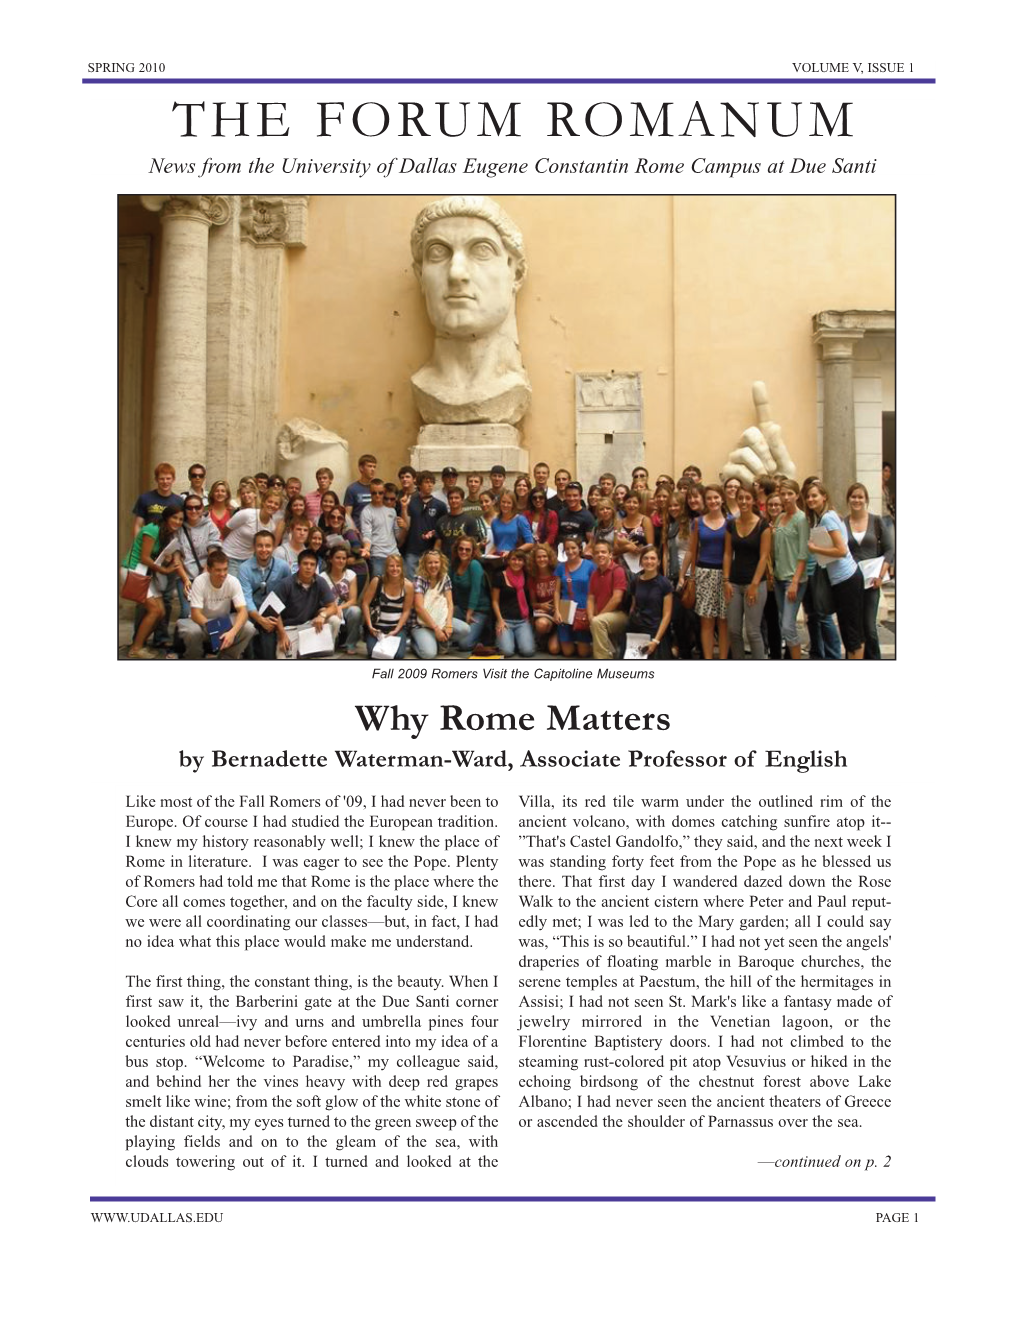 Spring 2010 Volume V, Issue 1 the Forum Romanum